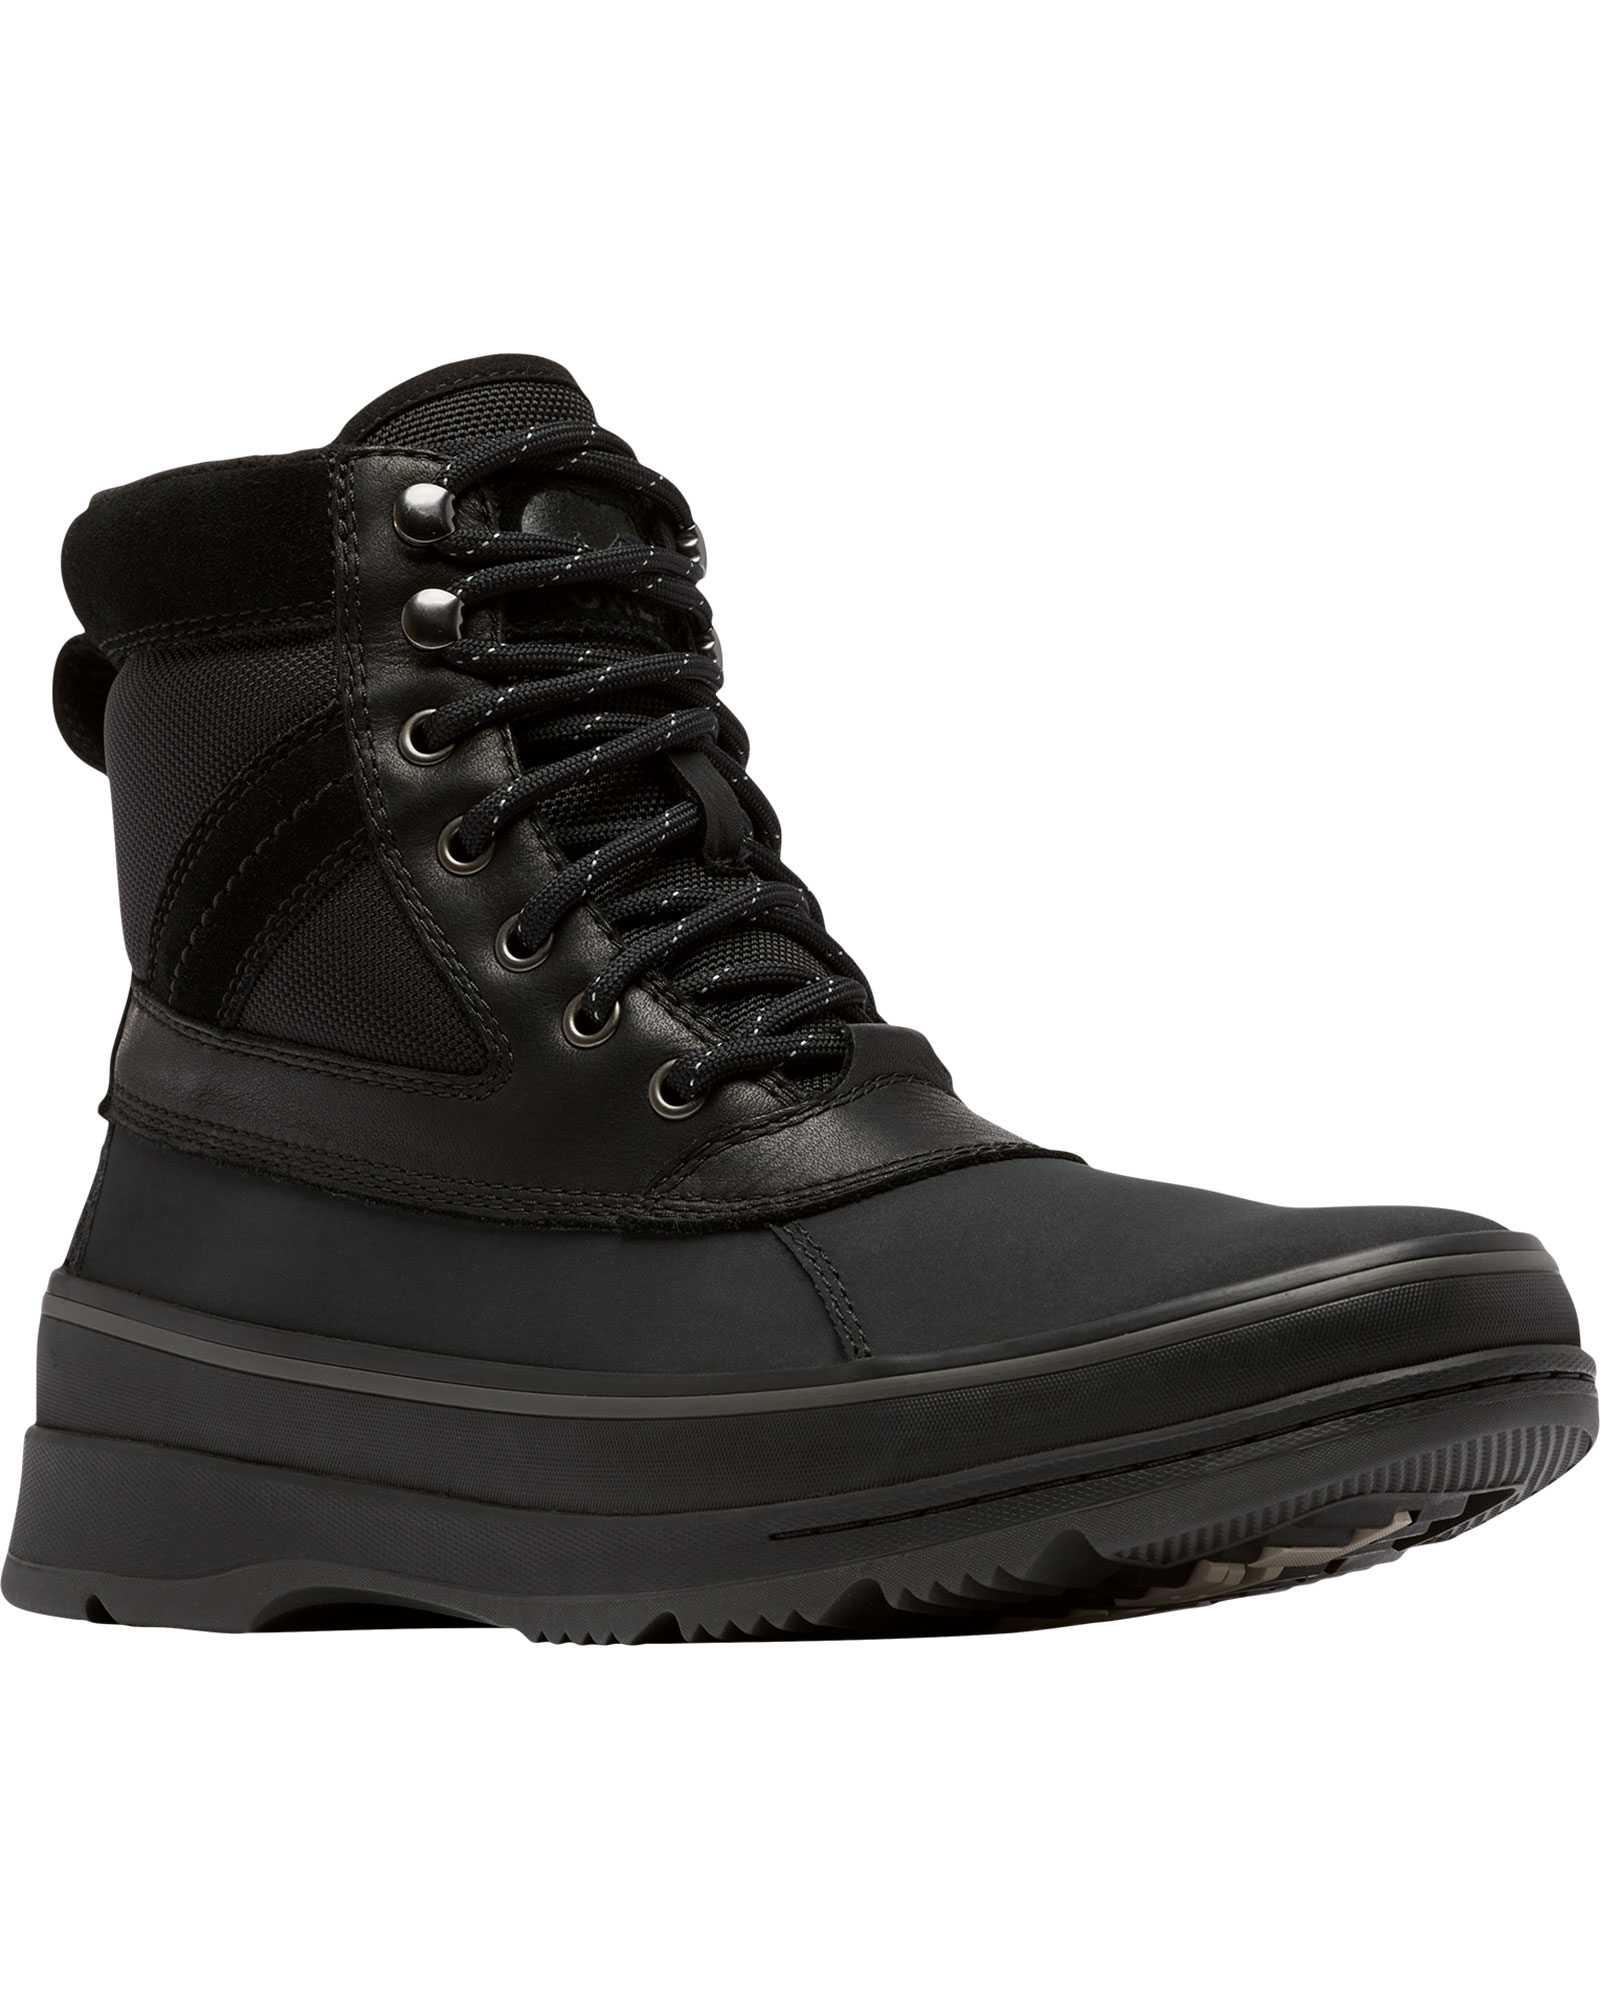 Sorel Ankeny II Waterproof Men’s Boots - Black/Jet UK 8